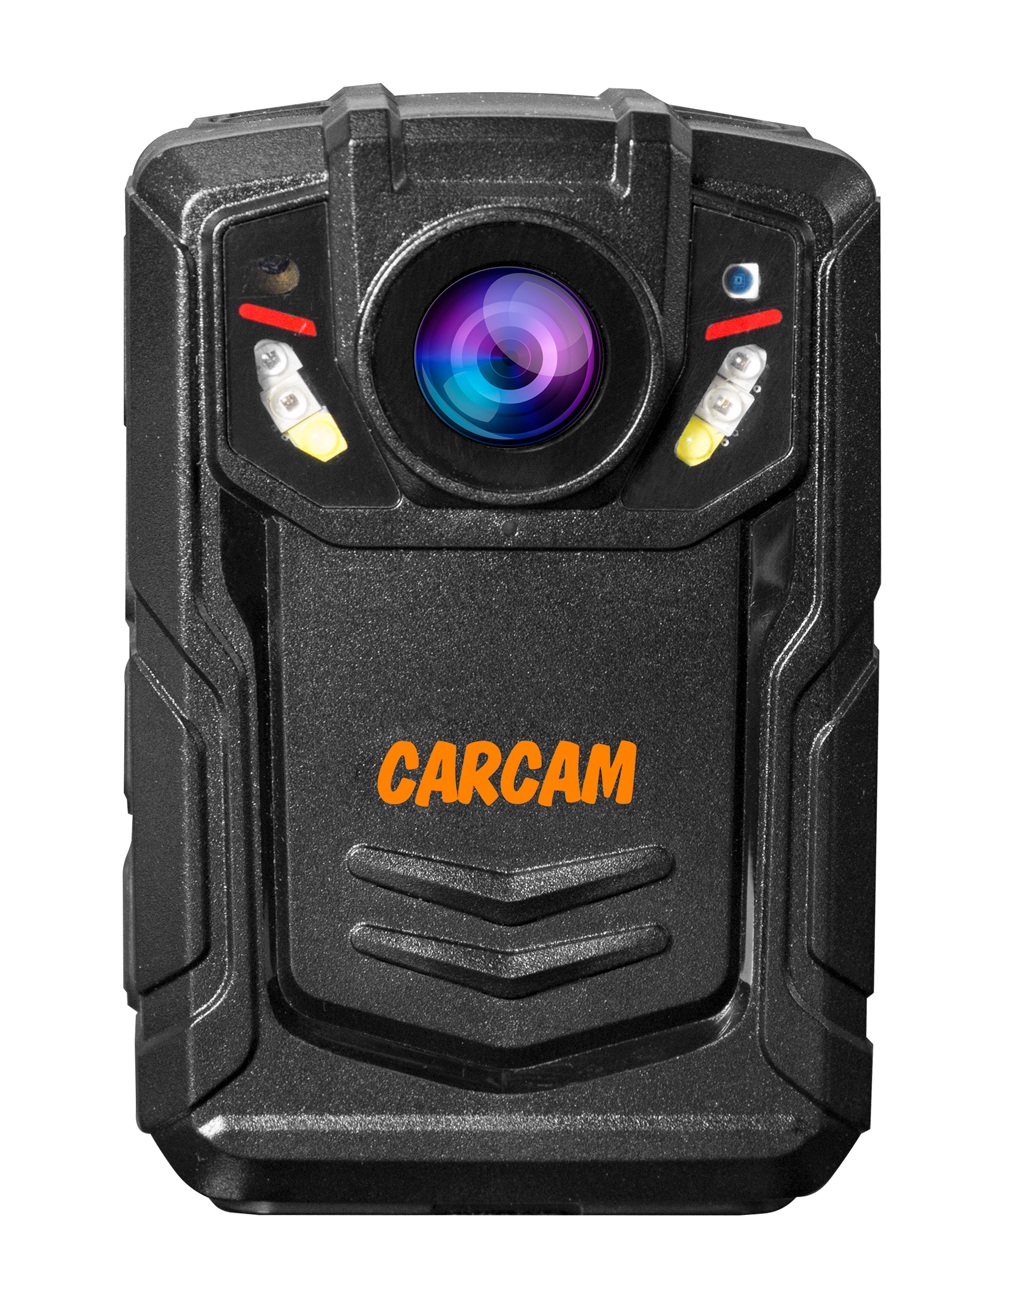 Персональный видеорегистратор CARCAM COMBAT 2S PRO 256GB персональный quad hd видеорегистратор для работников технических объектов carcam combat 2s prof 256gb